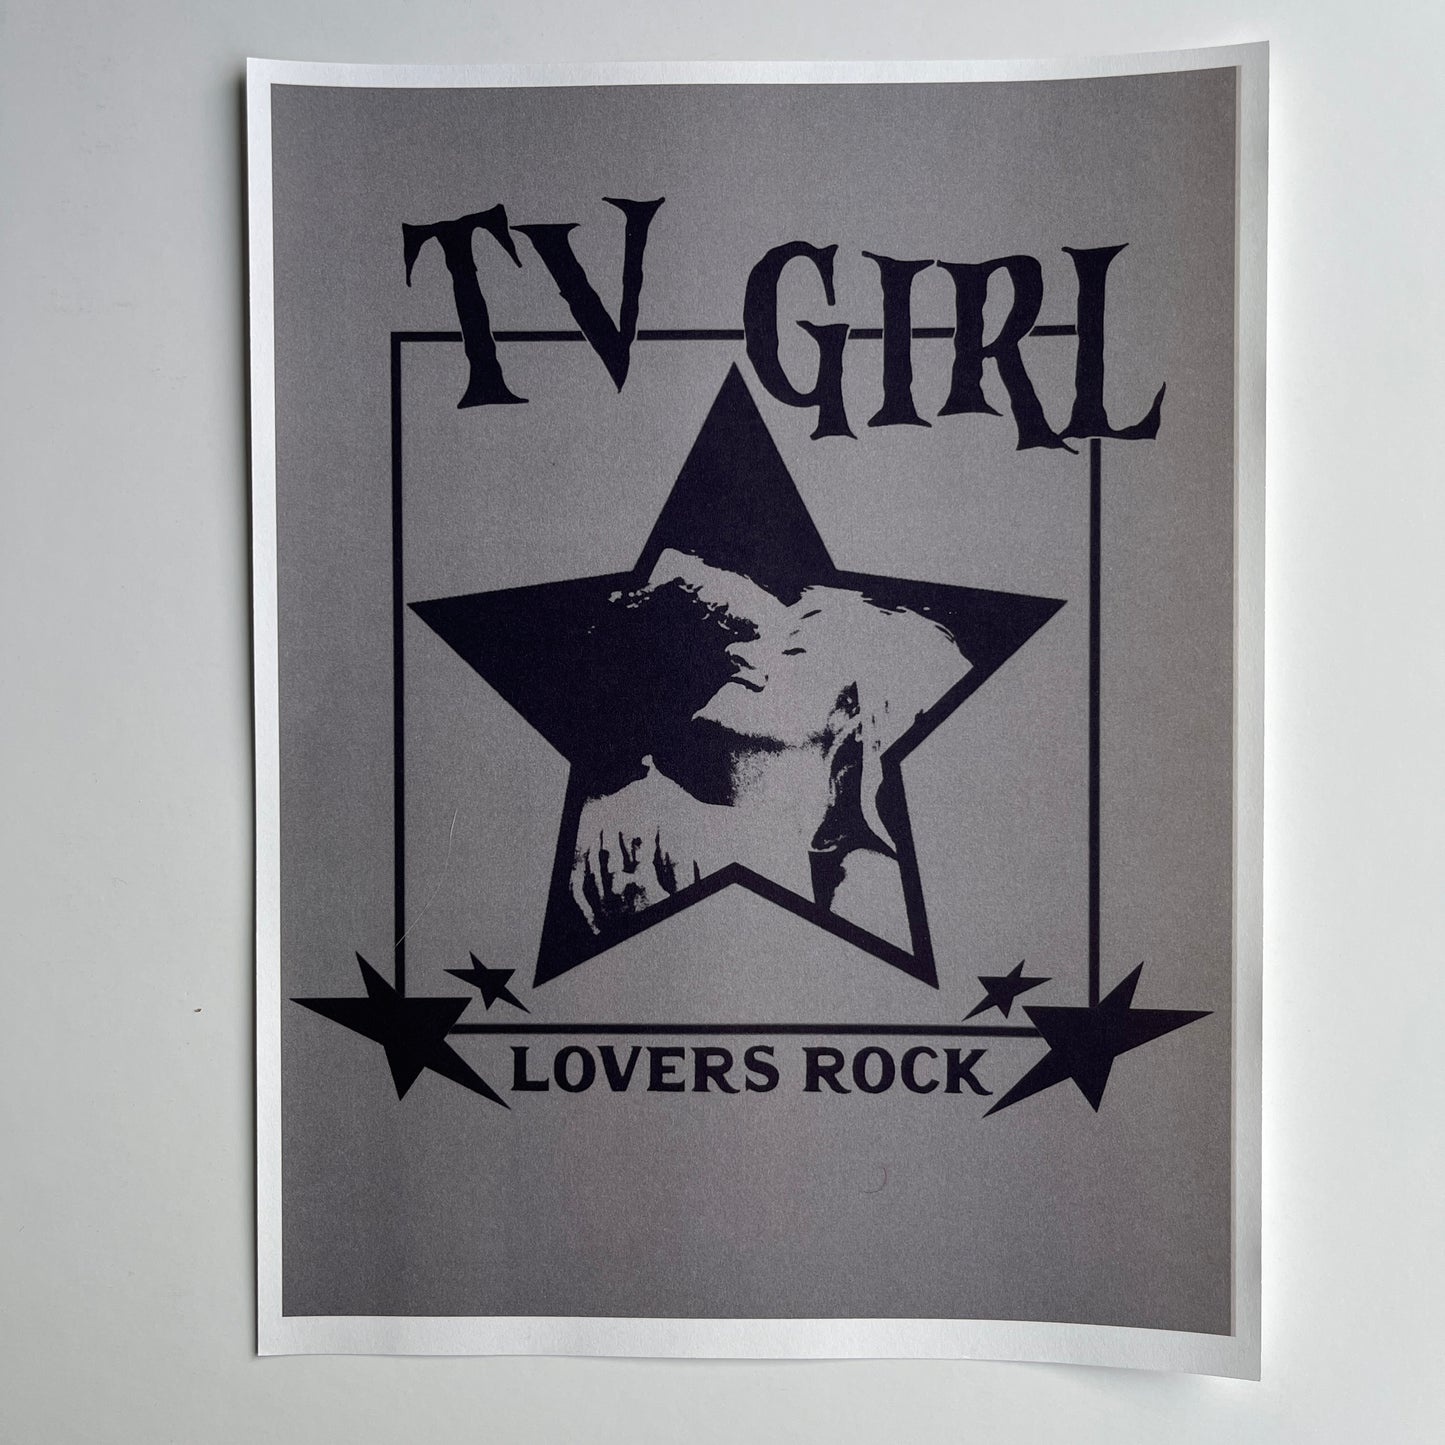 TV GIRL poster